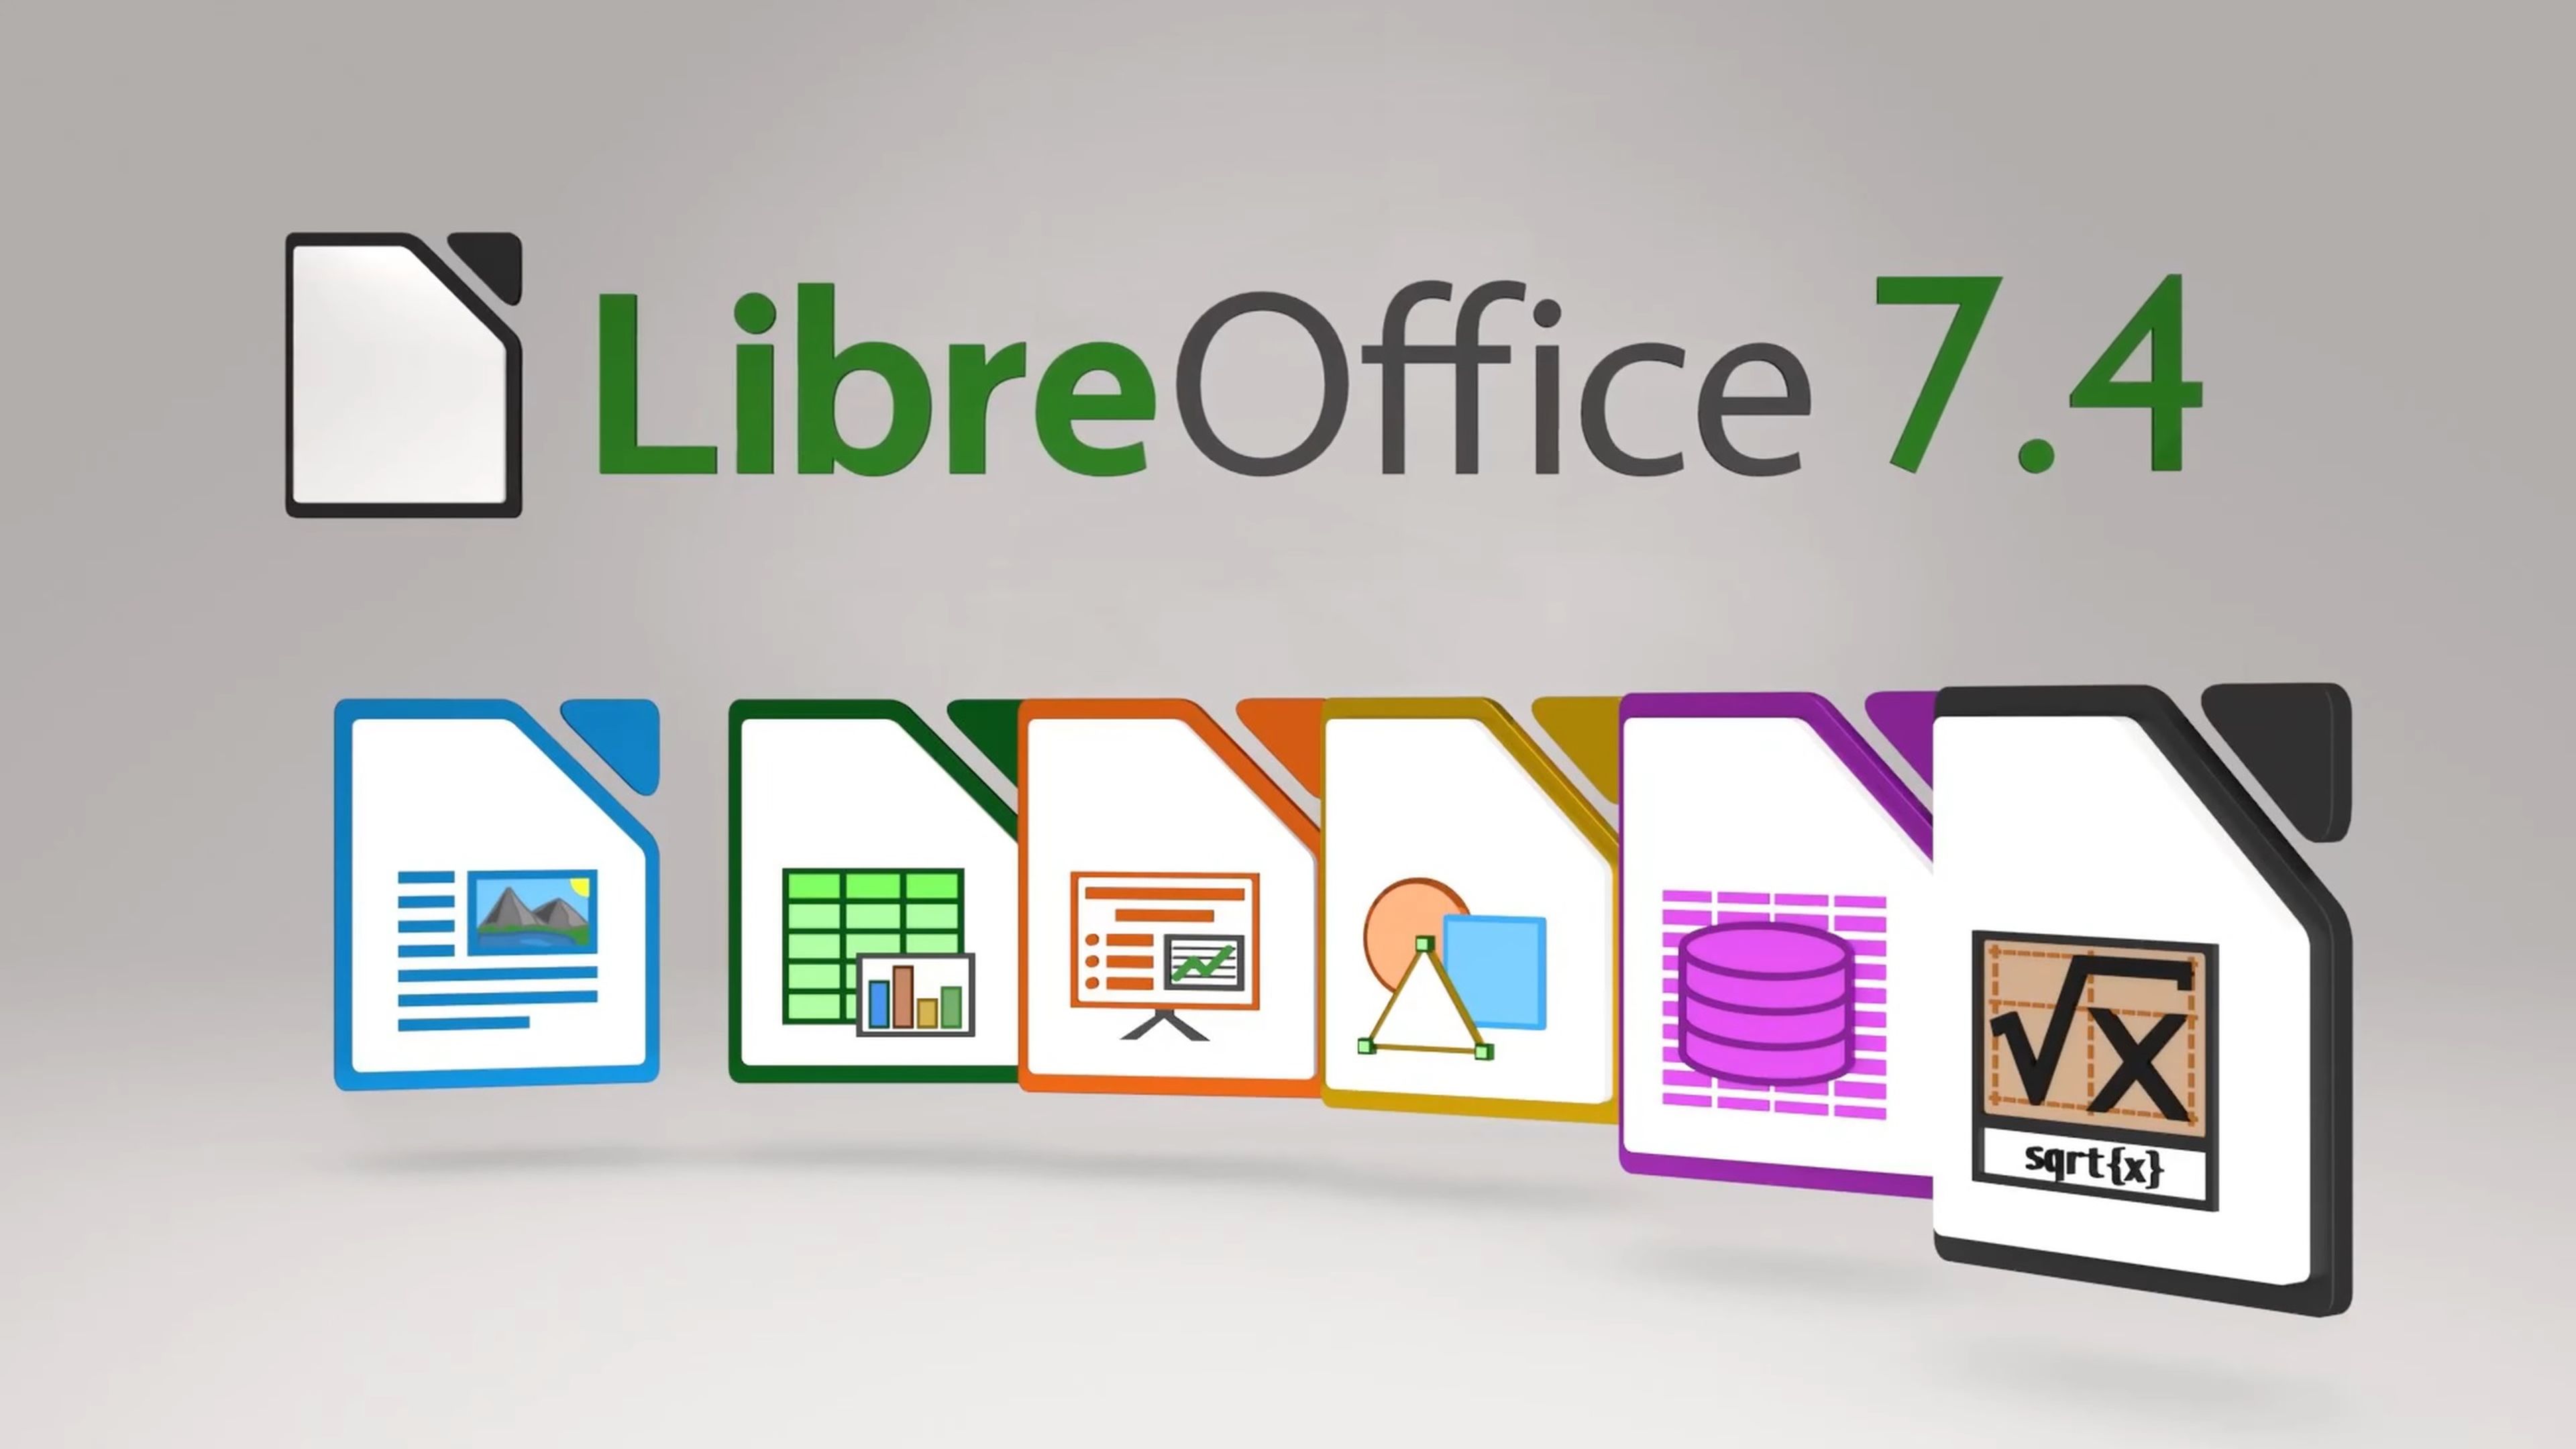 Obstinado Mañana Cesta Así es LibreOffice 7.4, el pack gratuito de ofimática para Windows, Mac,  Linux y móviles | Computer Hoy